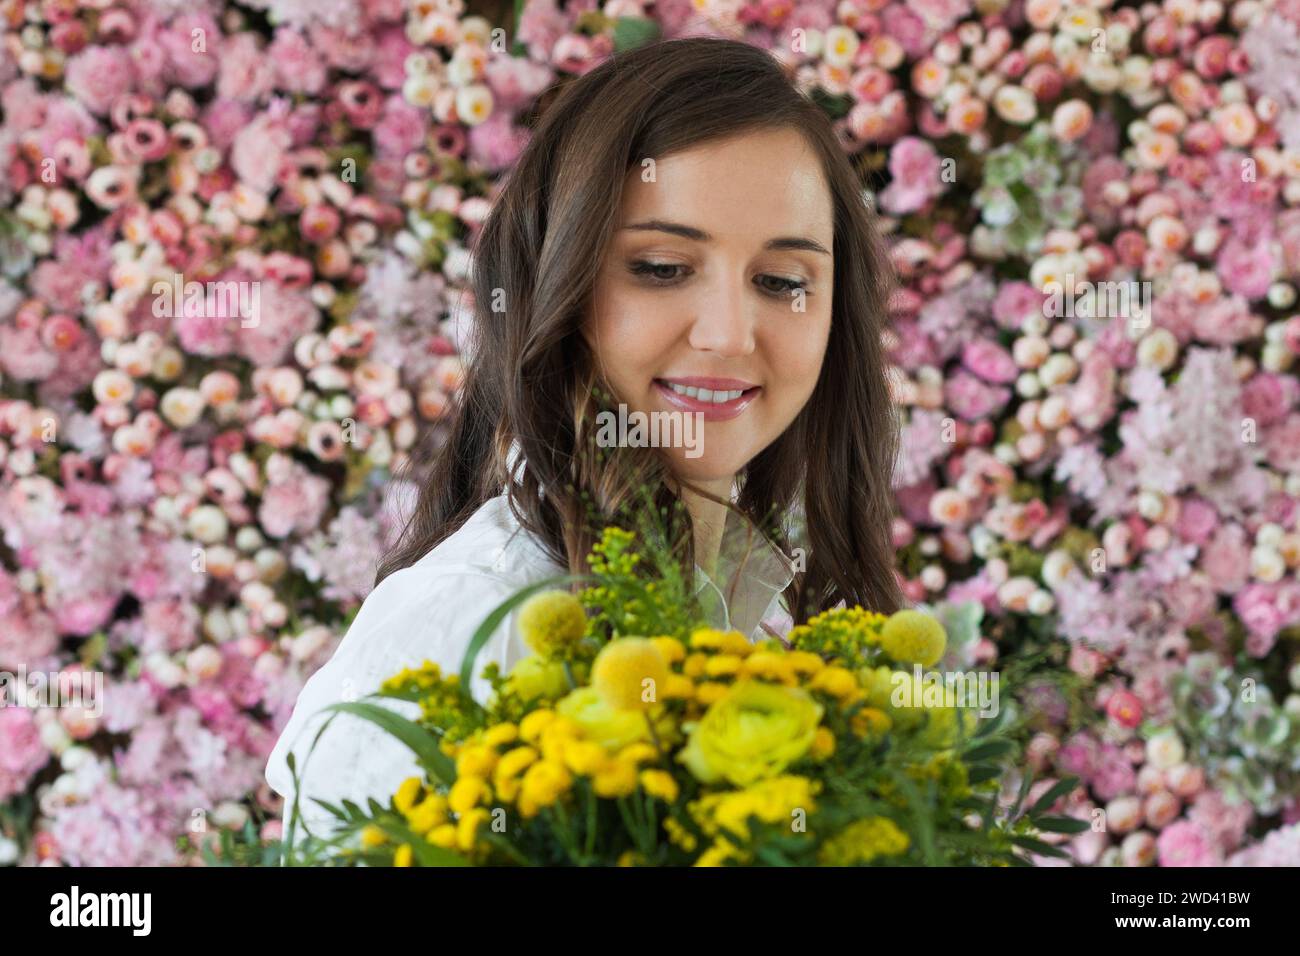 Wunderschöne gesunde Frau lächelt und hält bunte gelbe Farbe Blumenstrauß auf floralem Frühling oder Sommer Hintergrund, Studio Mode Schönheit Porträt Stockfoto